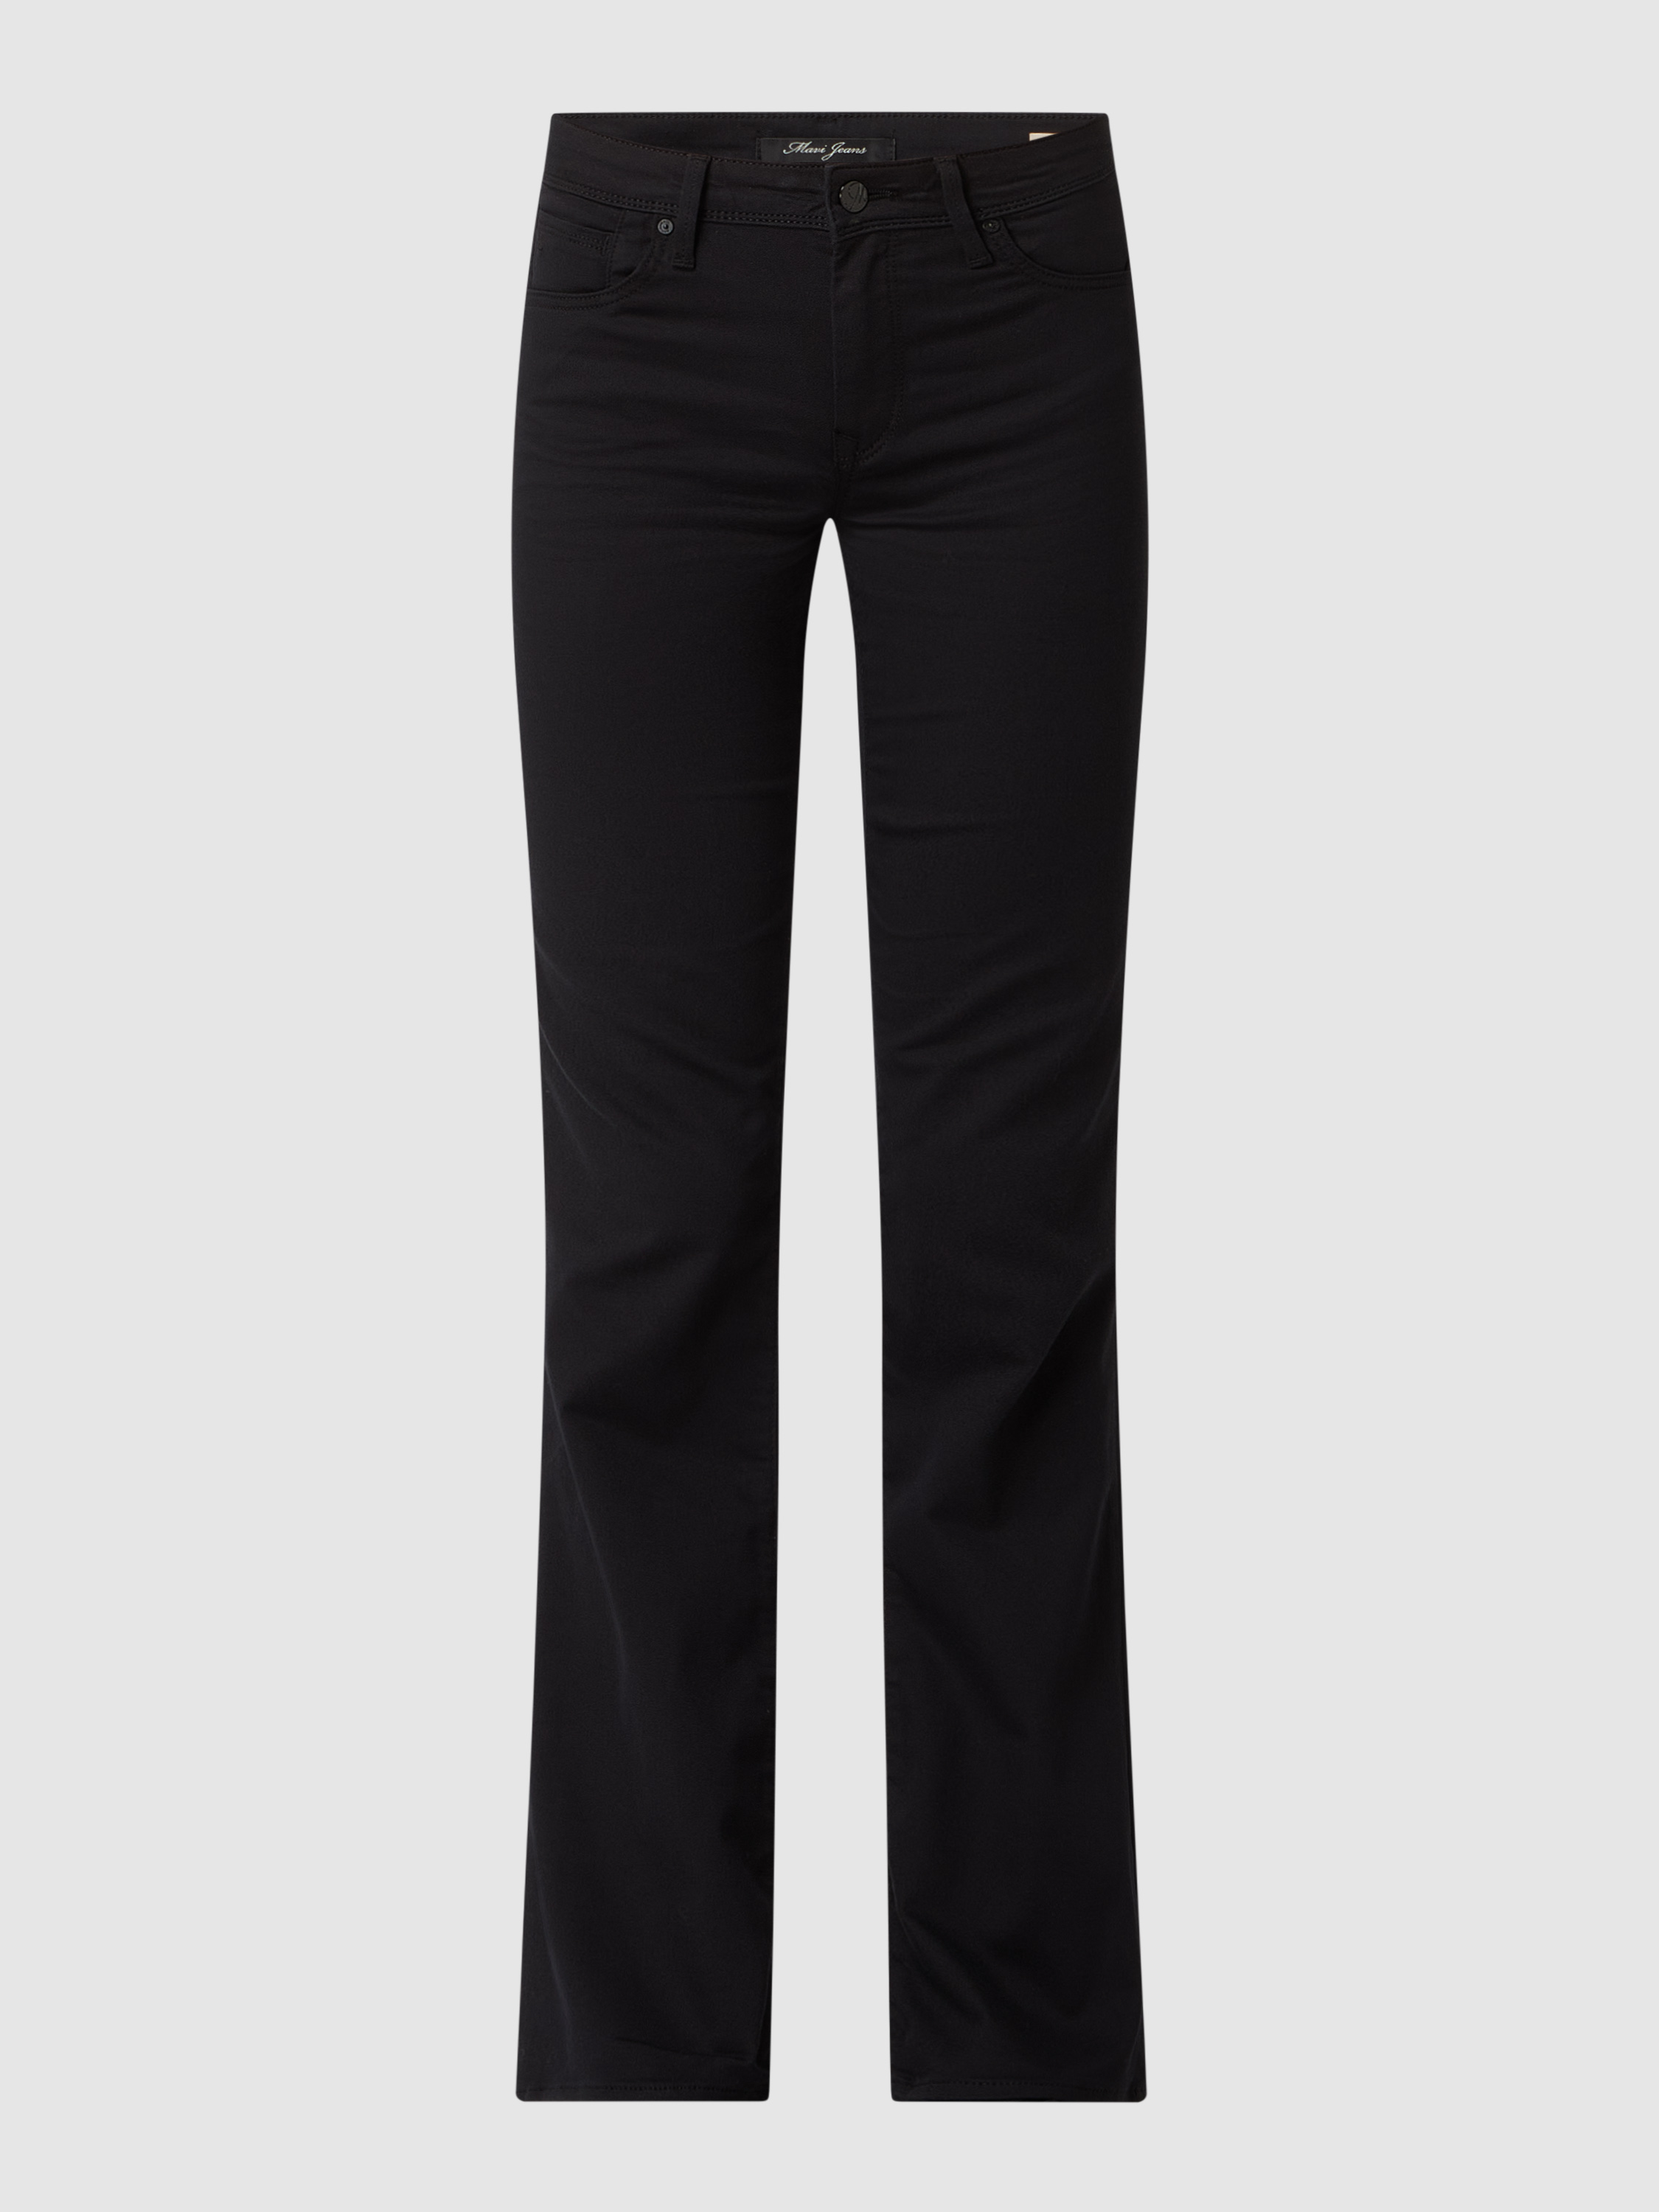 Джинсы женские mavi jeans 1455296 черные 26/34 (доставка из-за рубежа)